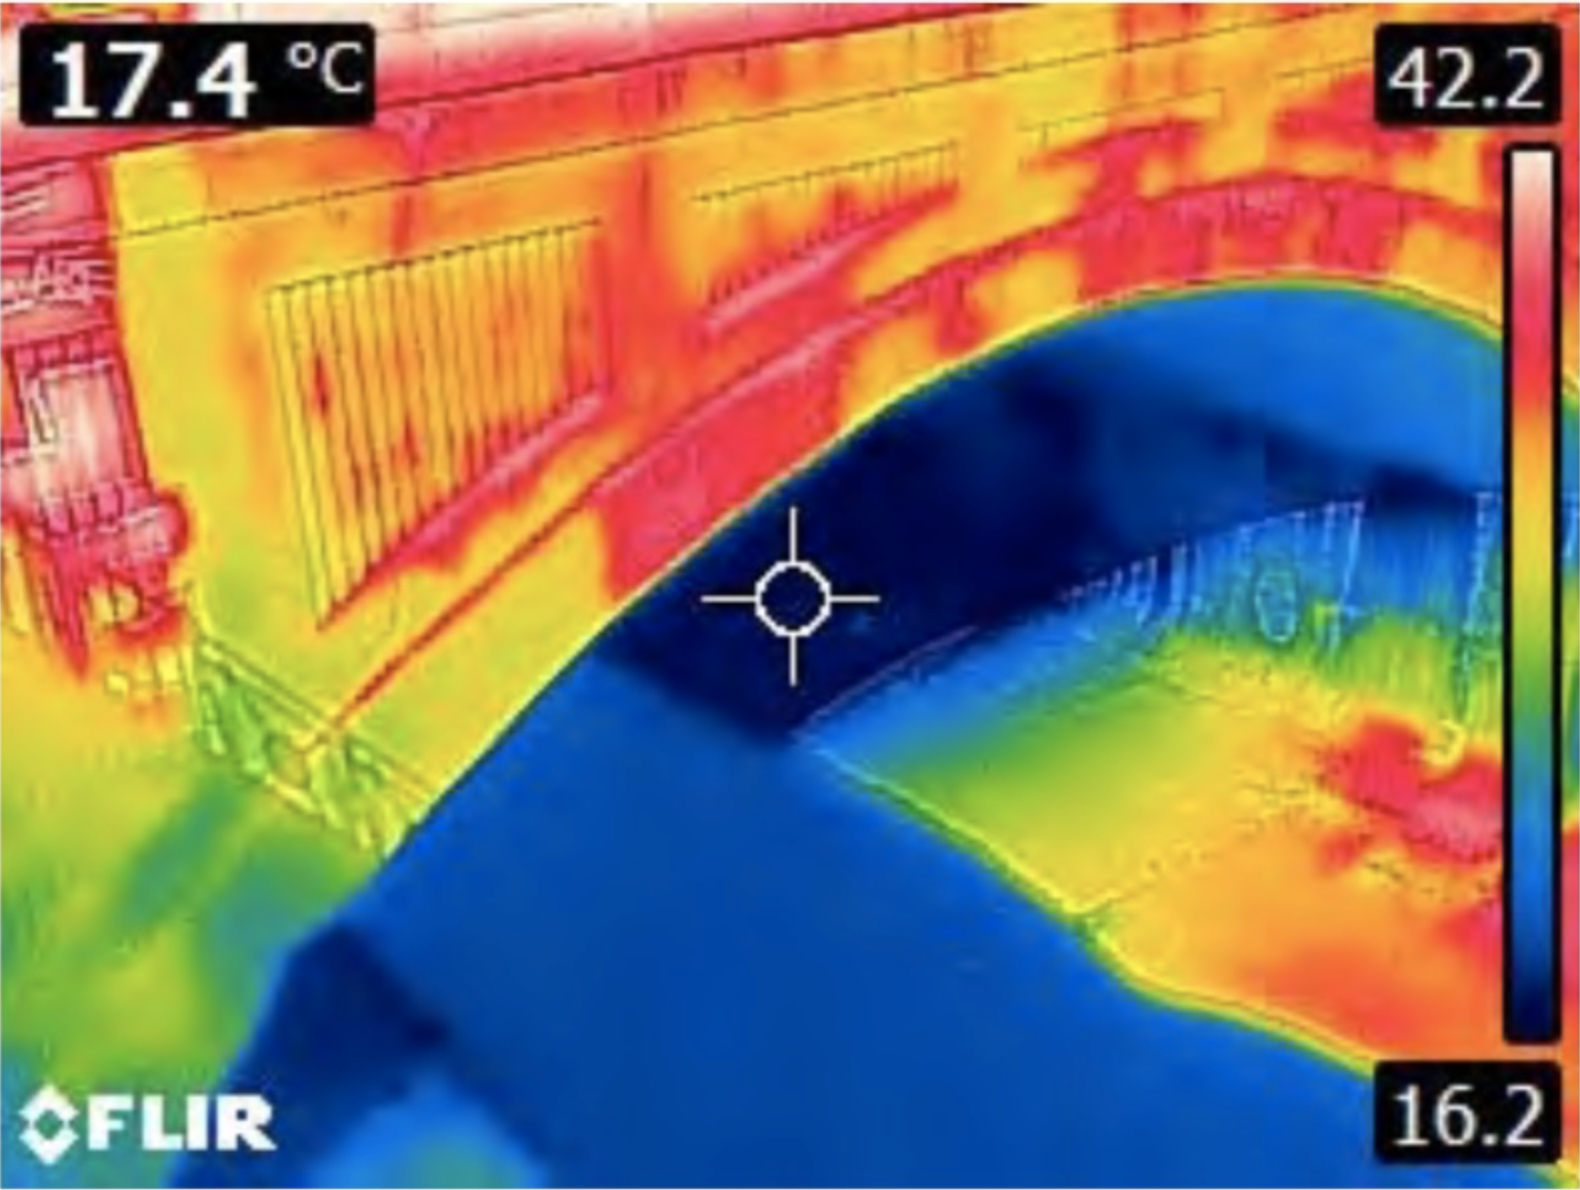 Thermalfoto: Brückenbogen in gelb/rot. Unter der Brücke eine große blaue Fläche.